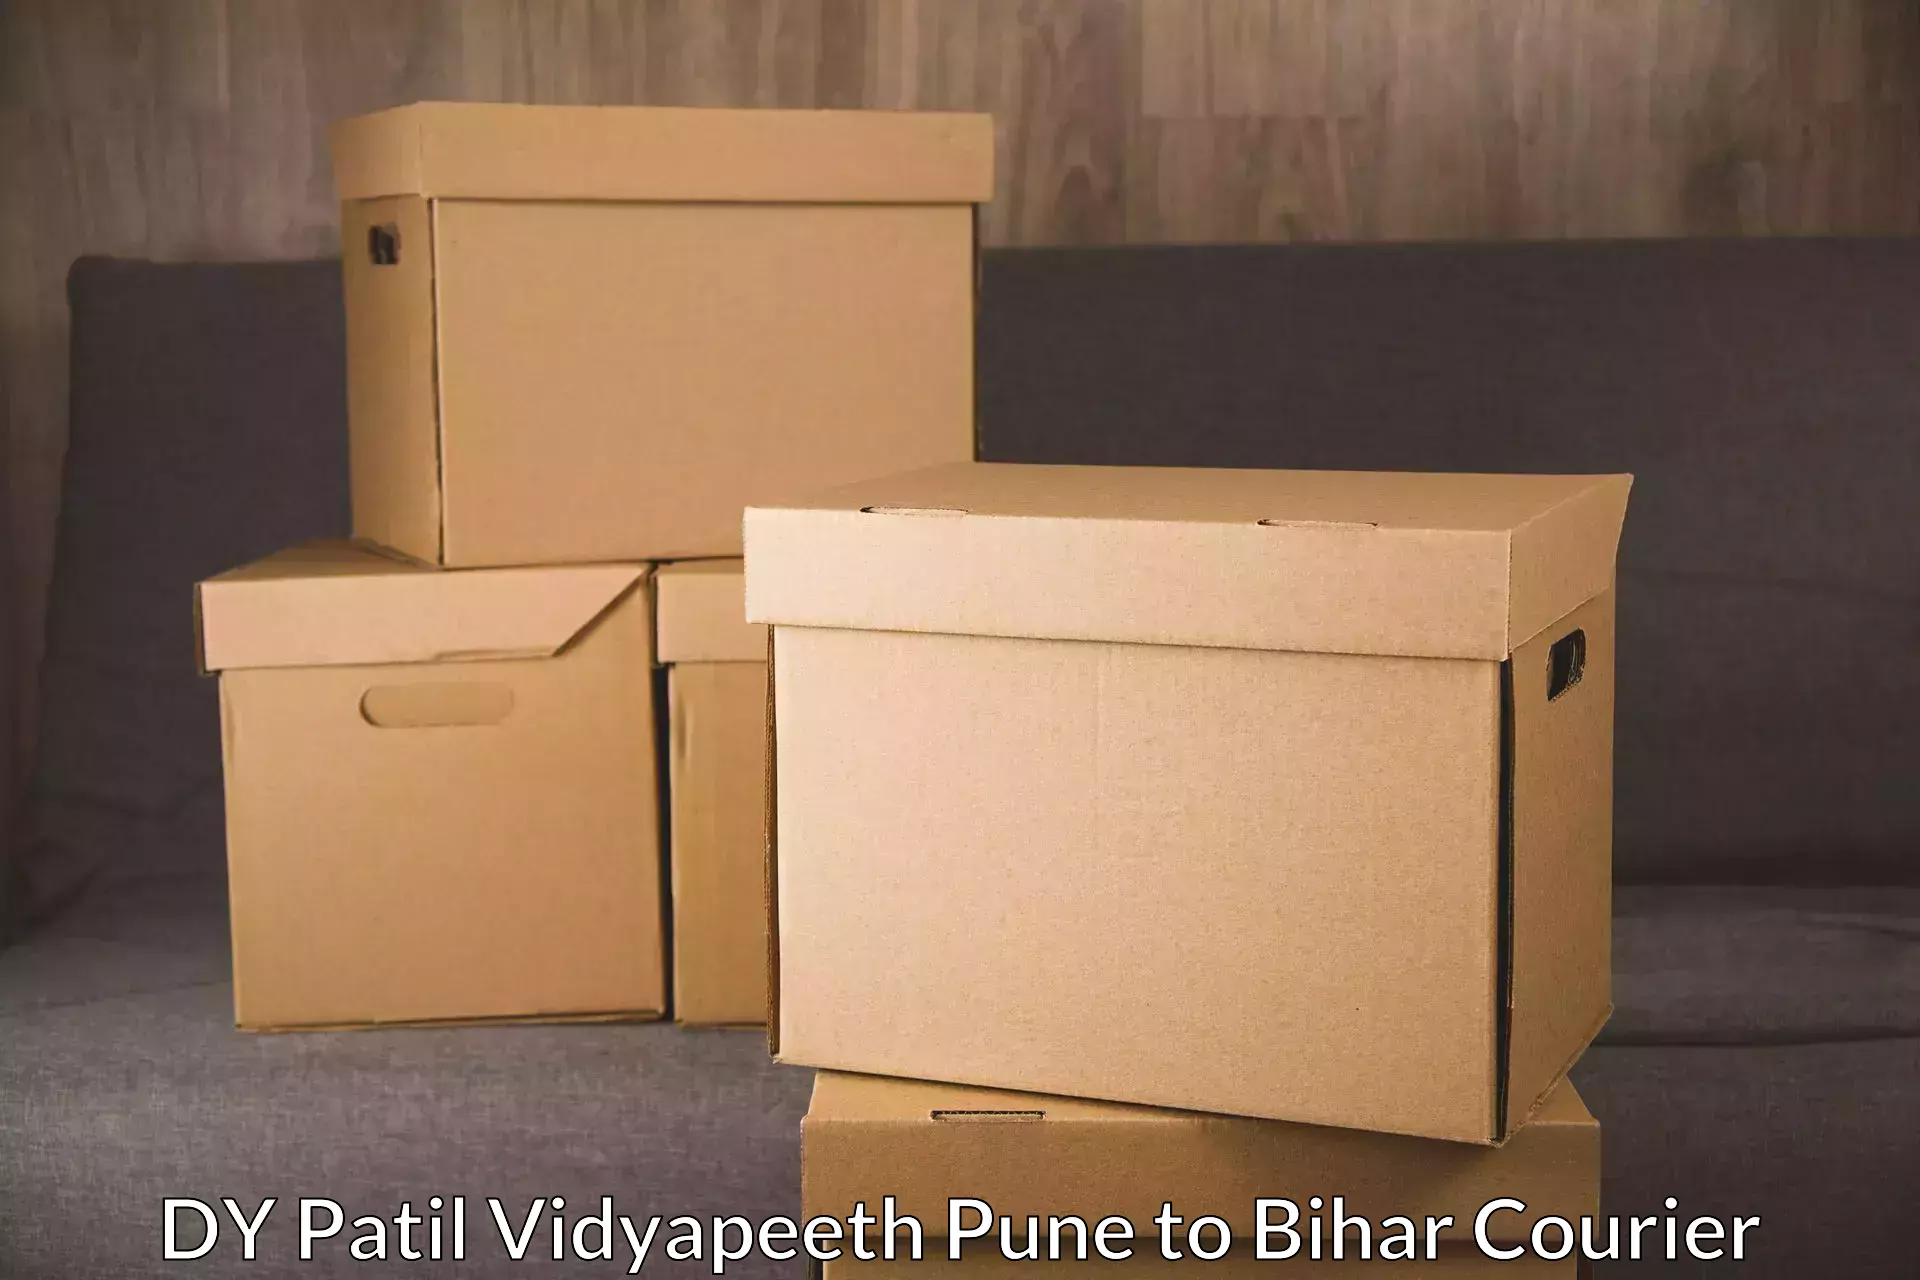 Efficient parcel service DY Patil Vidyapeeth Pune to Manjhaul